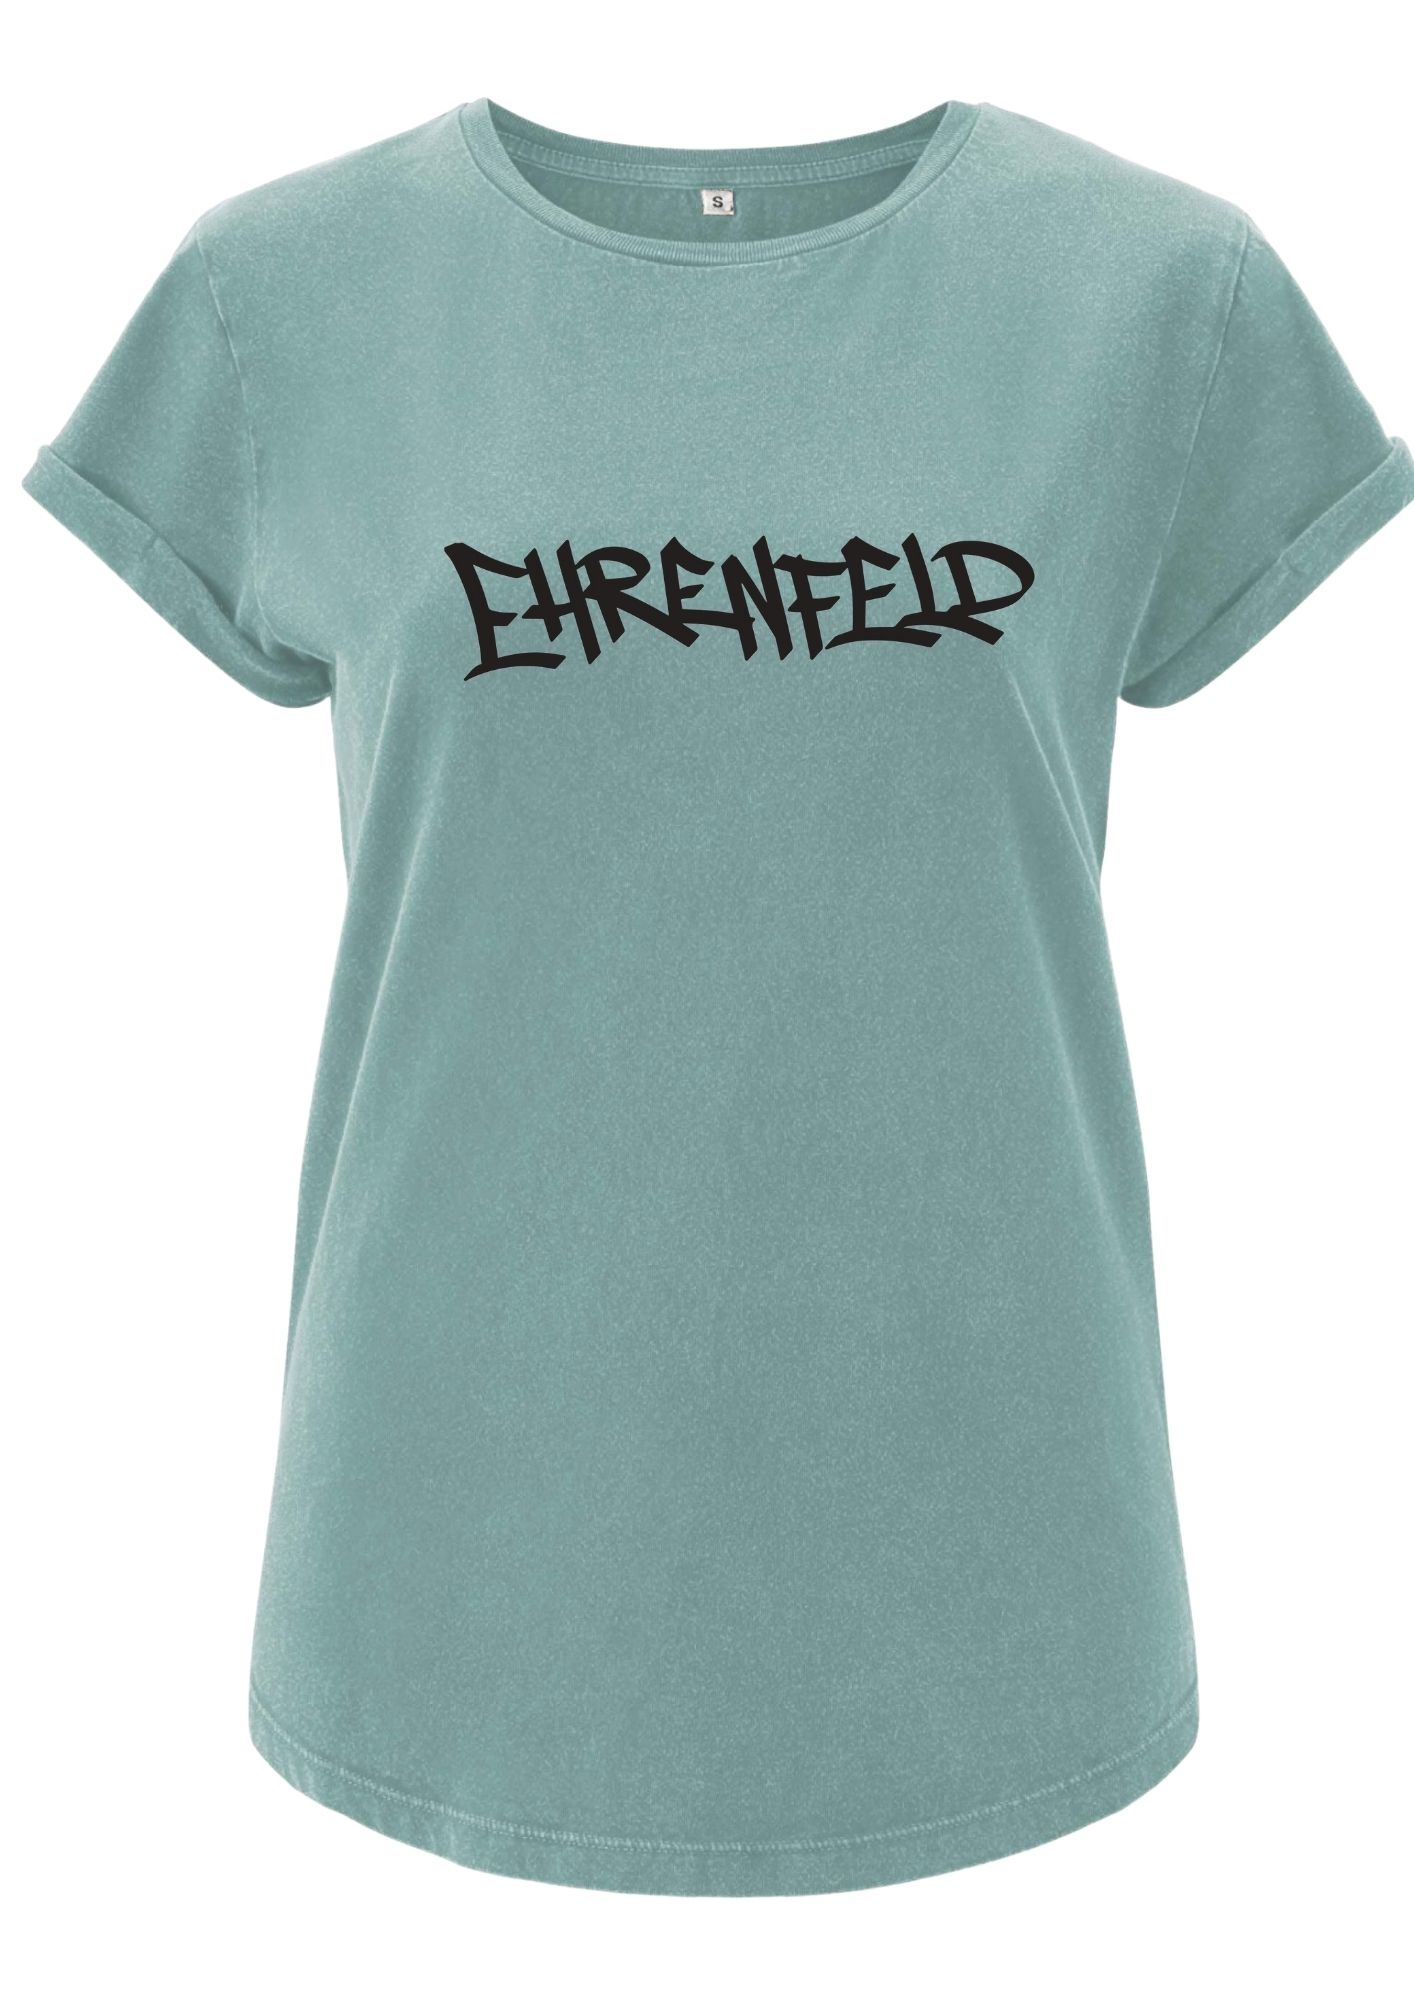 Ehrenfeld (BigLetters) T-Shirt